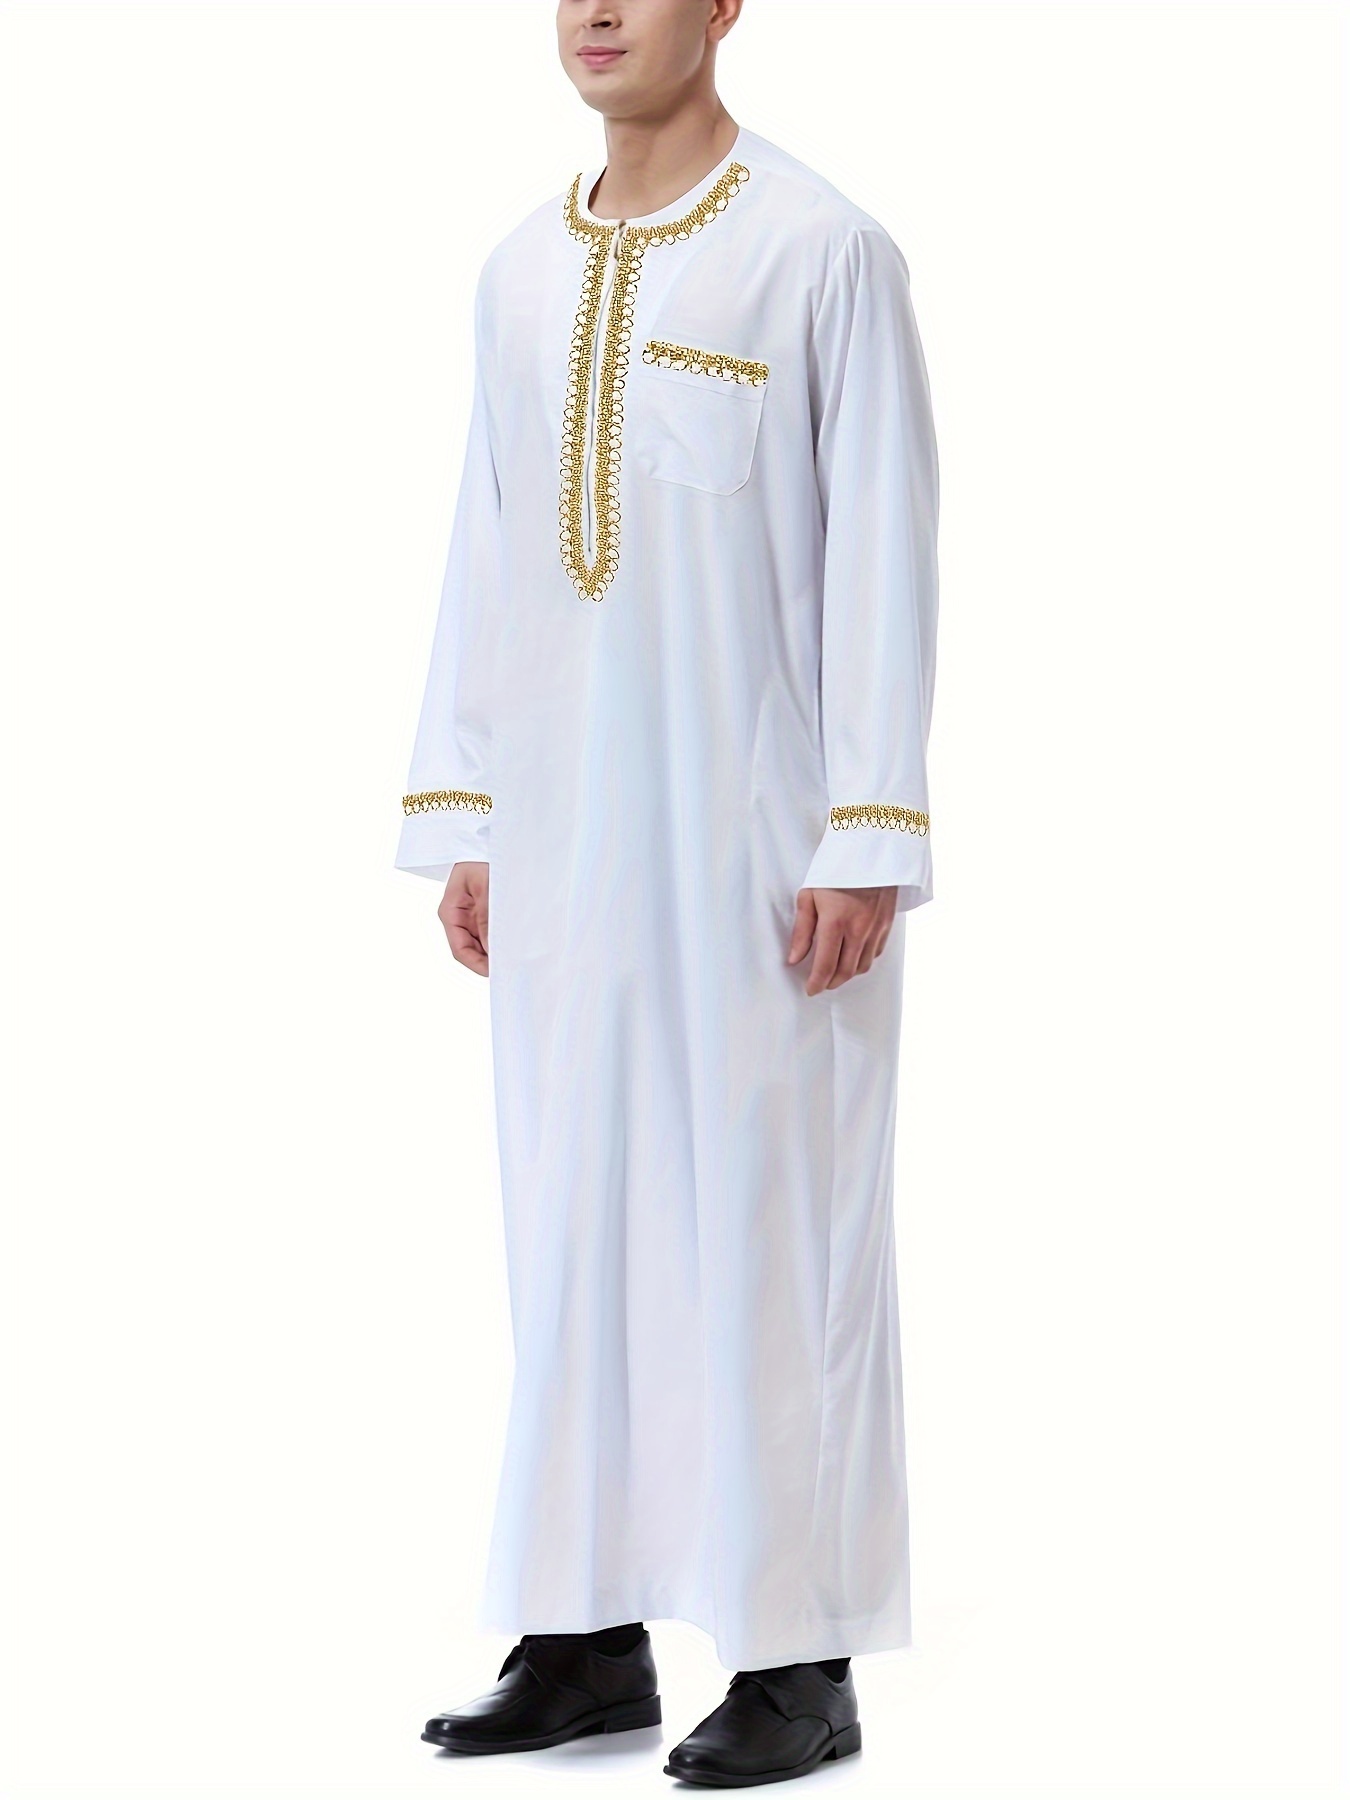 Thobă arabă saudită pentru bărbați în timpul Ramadanului, cu mâneci lungi, Kandora, îmbrăcăminte pentru Ramadan, Ramadan, Eid Al Adha